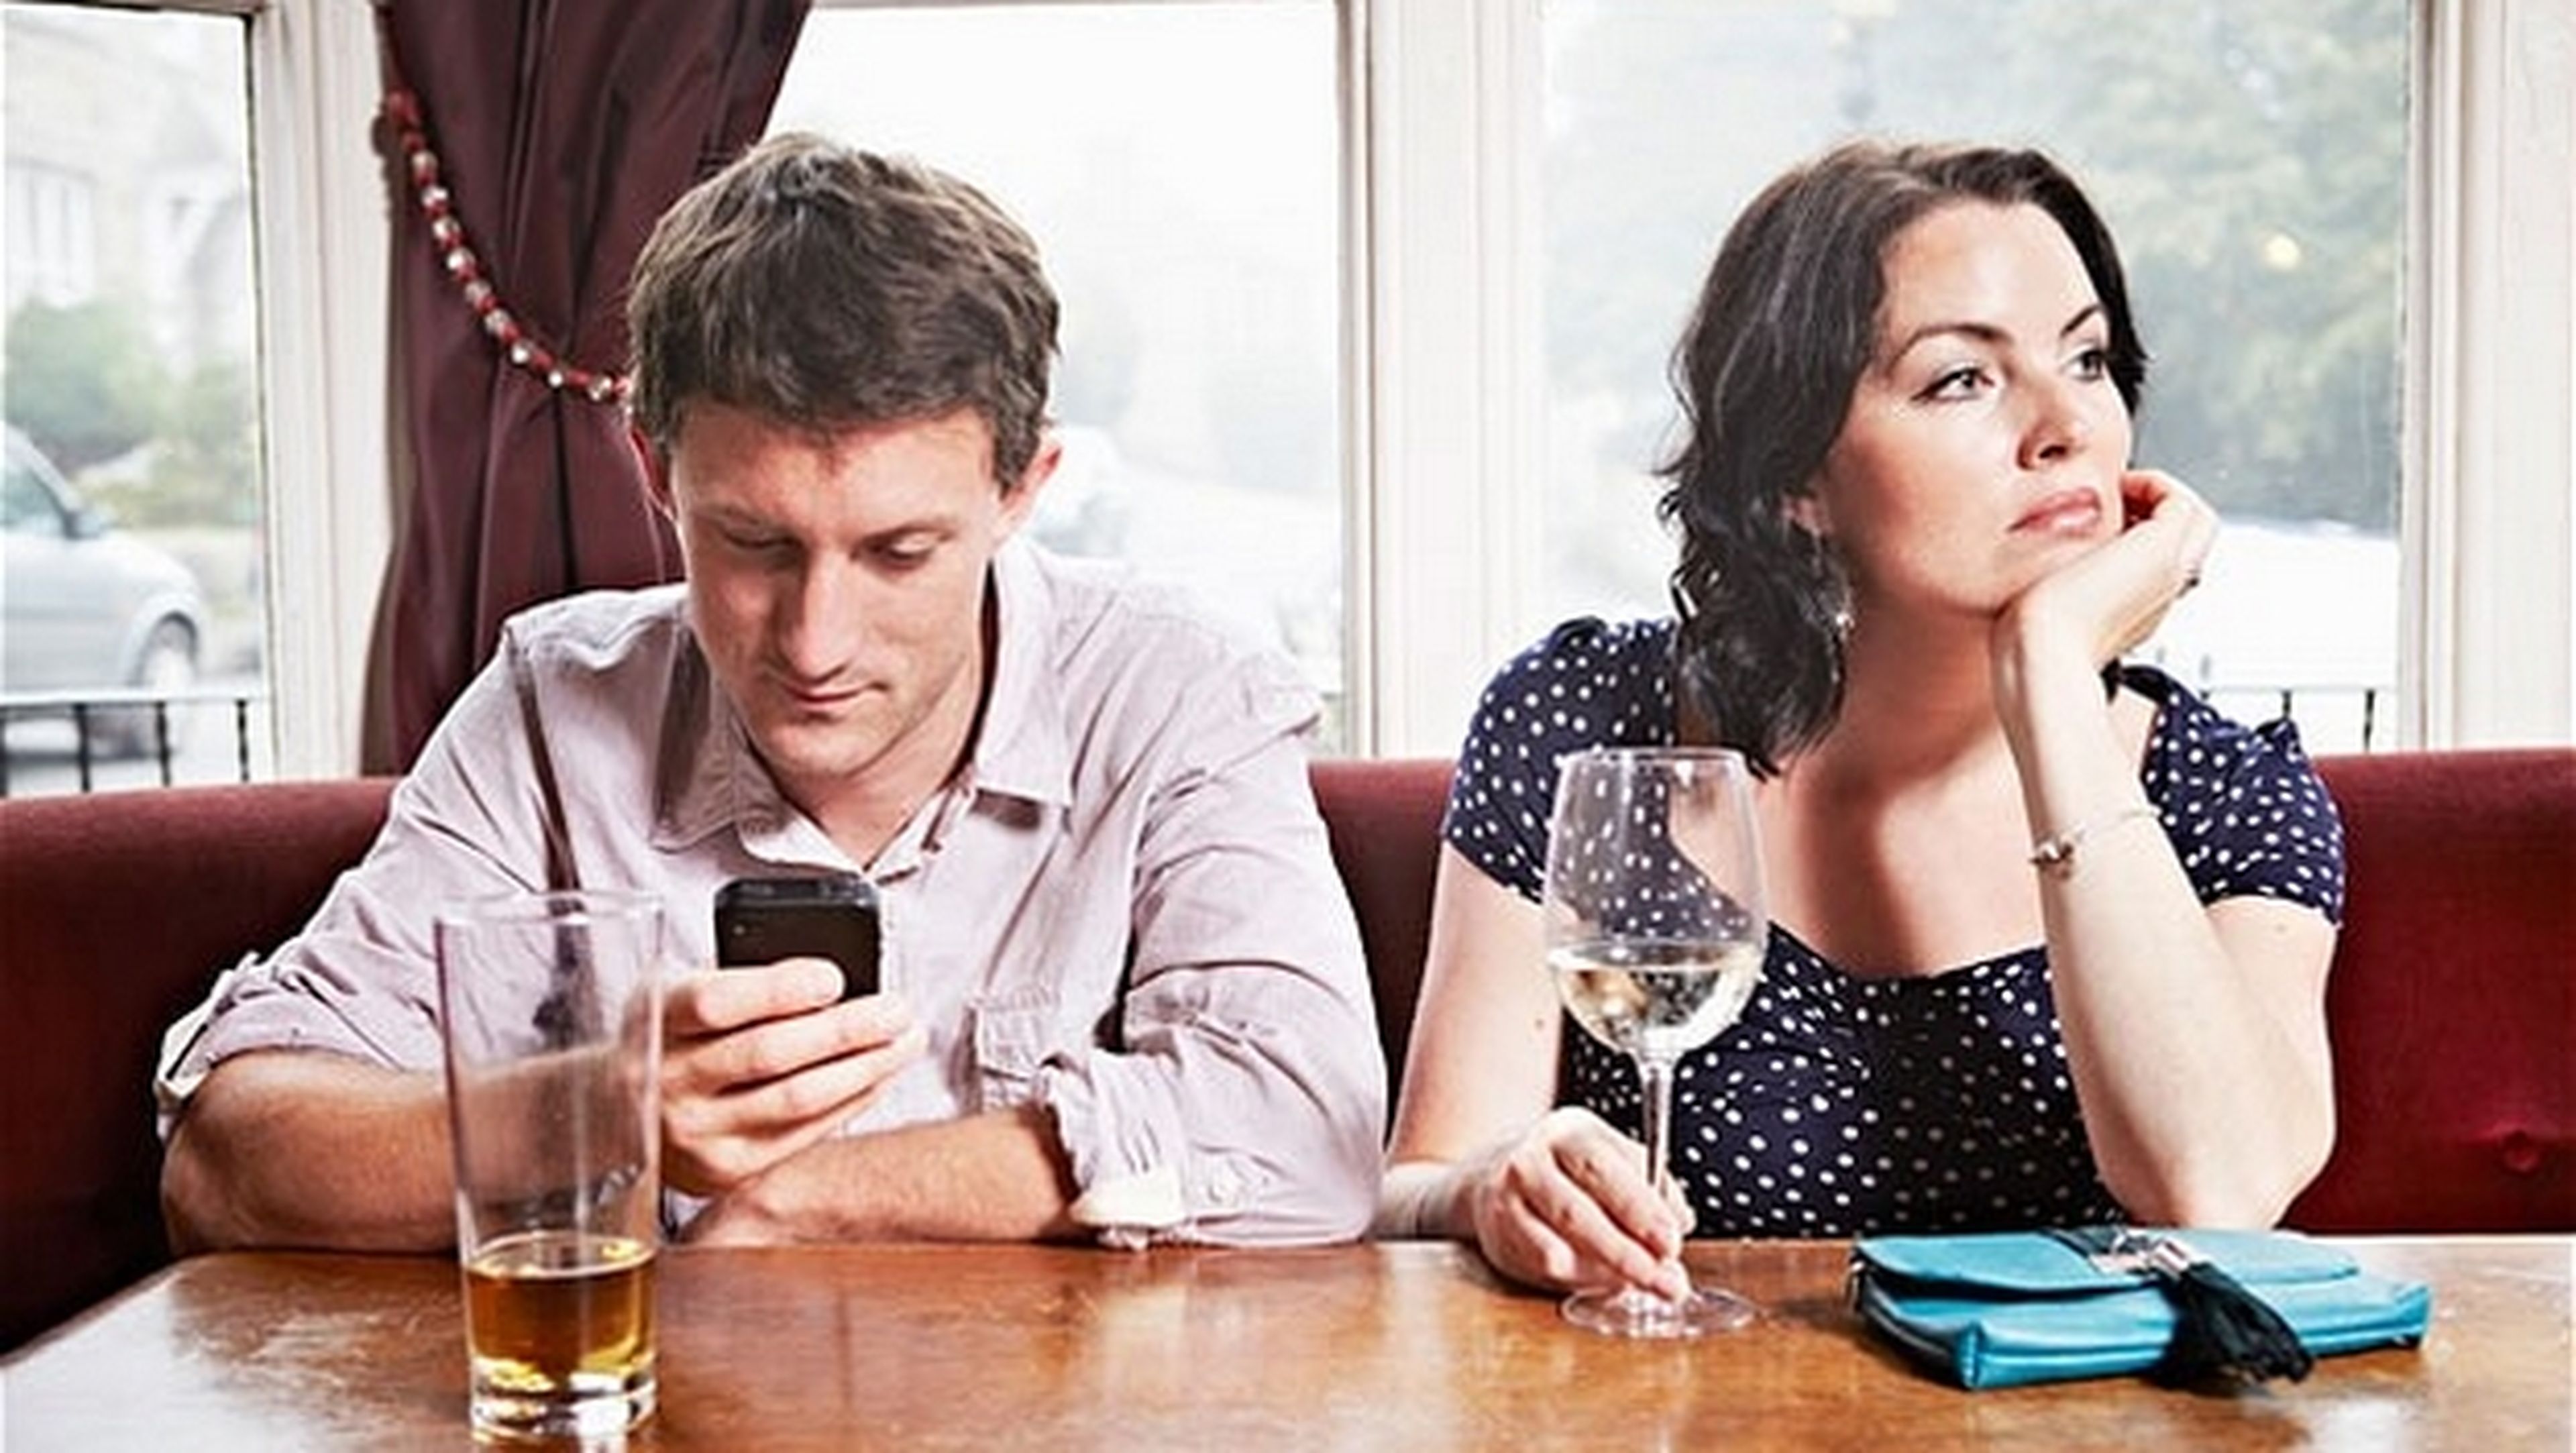 un estudio asegura qe los españoles prefieren el móvil antes que charlar con su pareja.